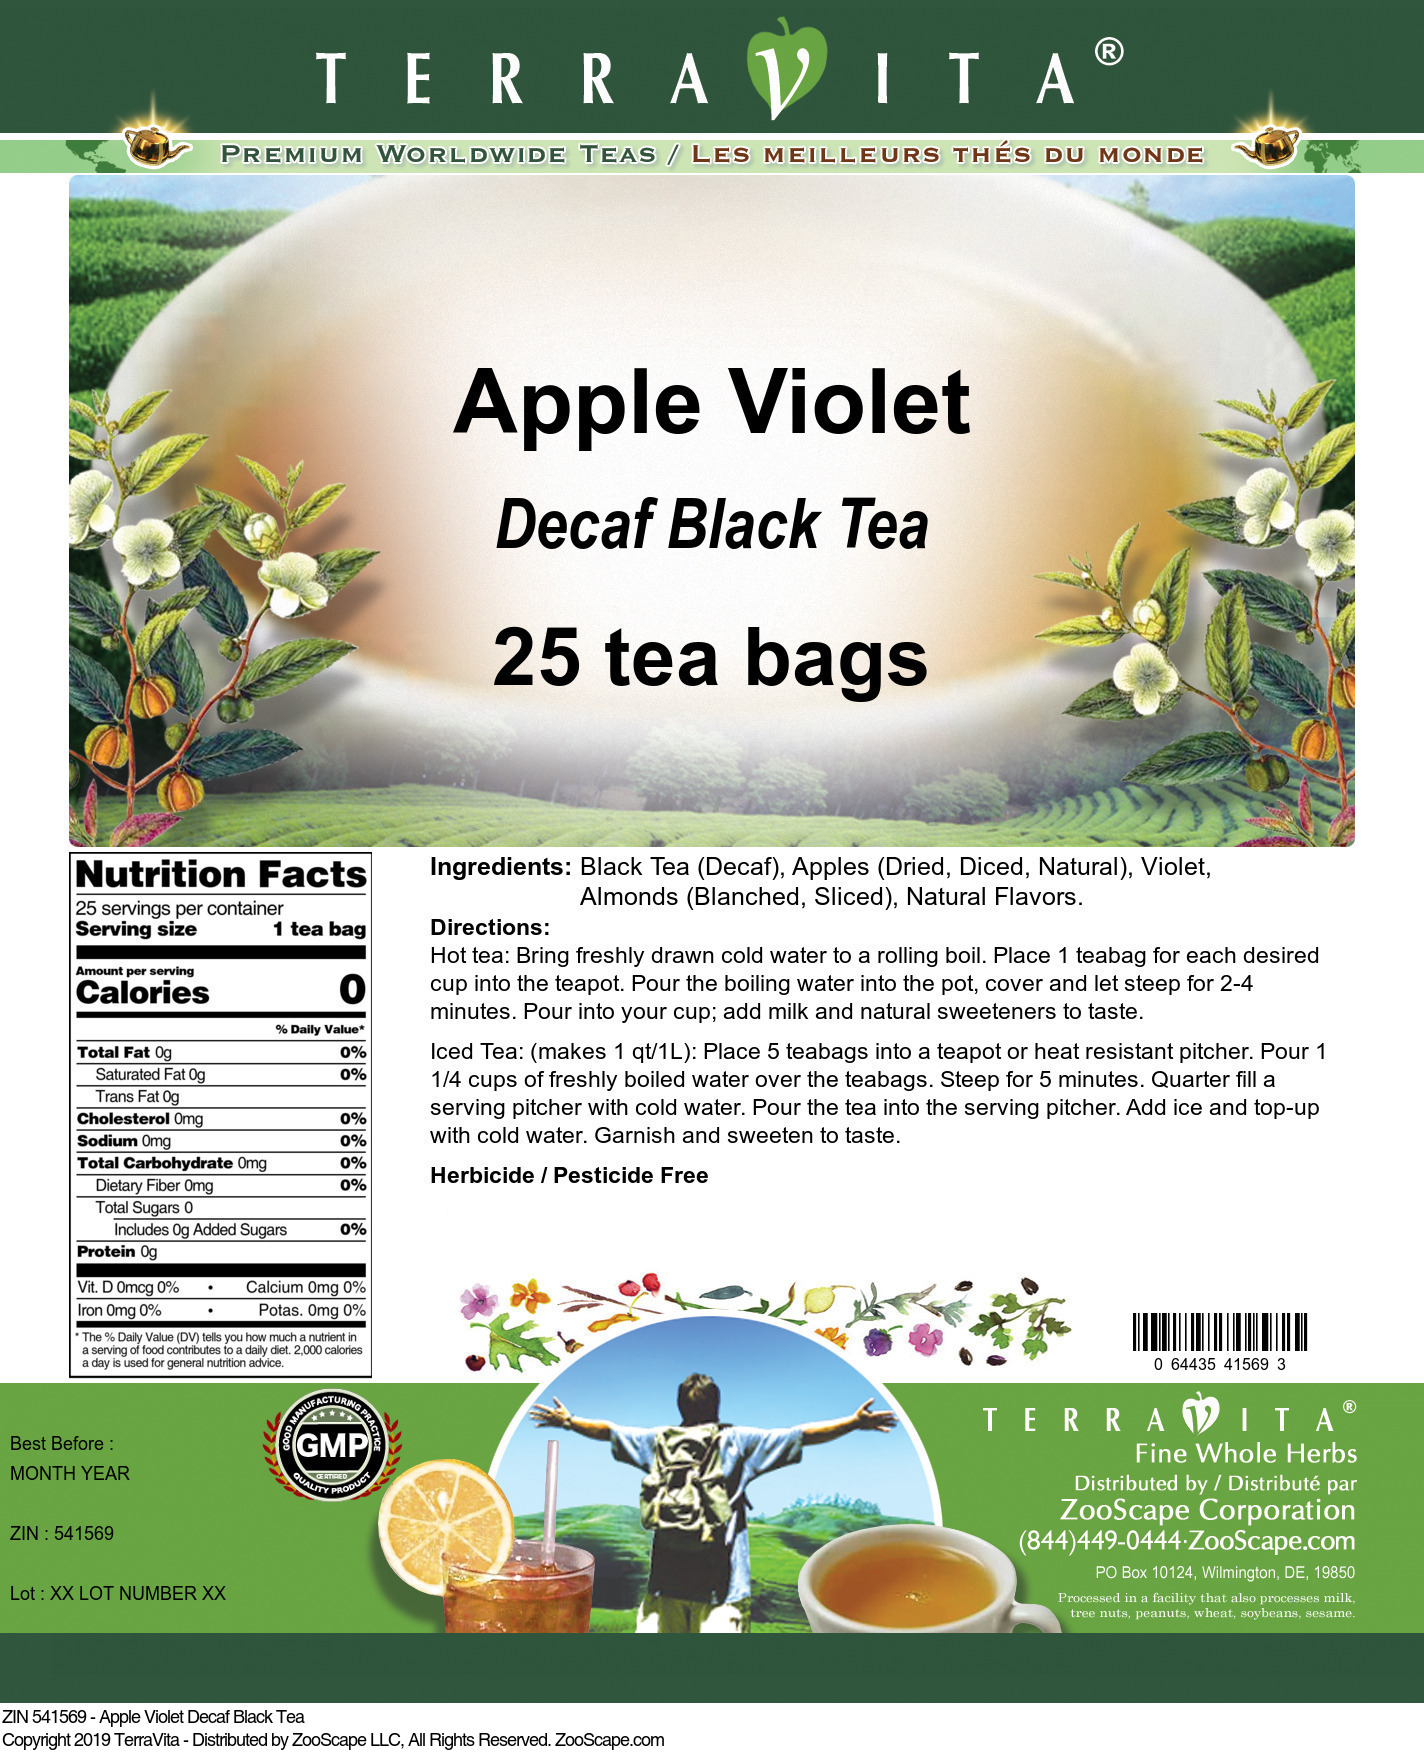 Apple Violet Decaf Black Tea - Label